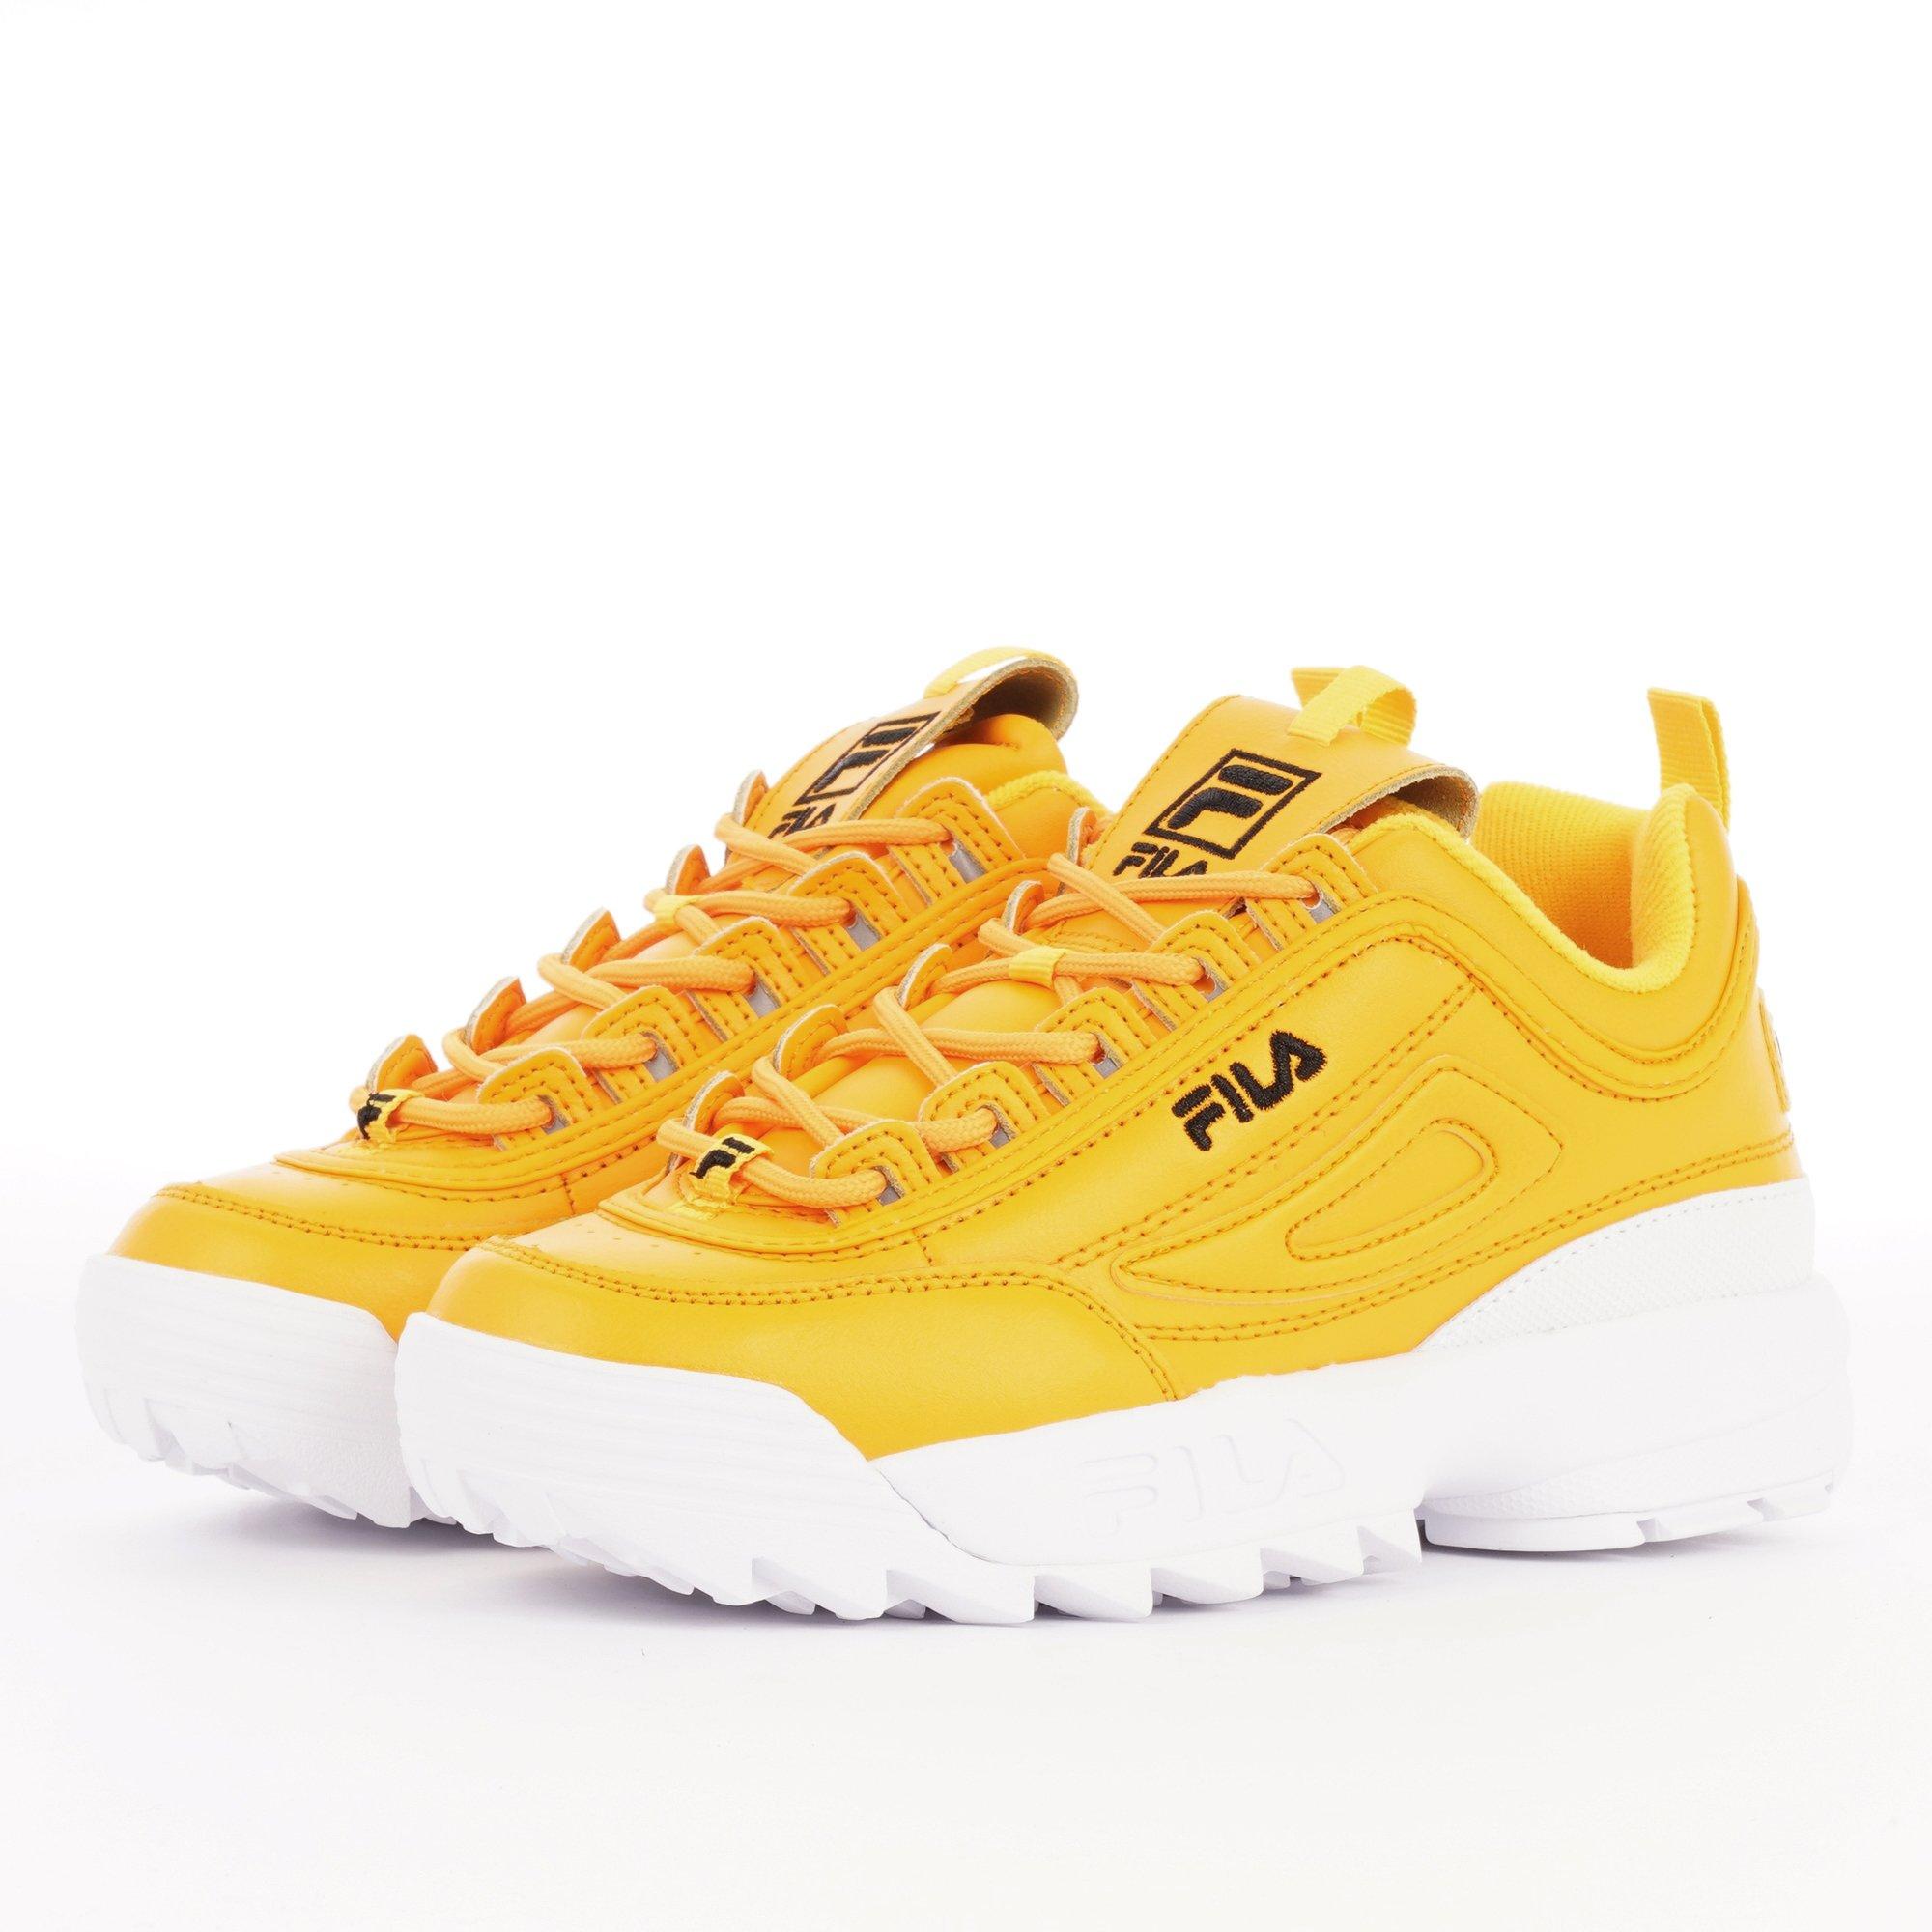 fila sneakers yellow